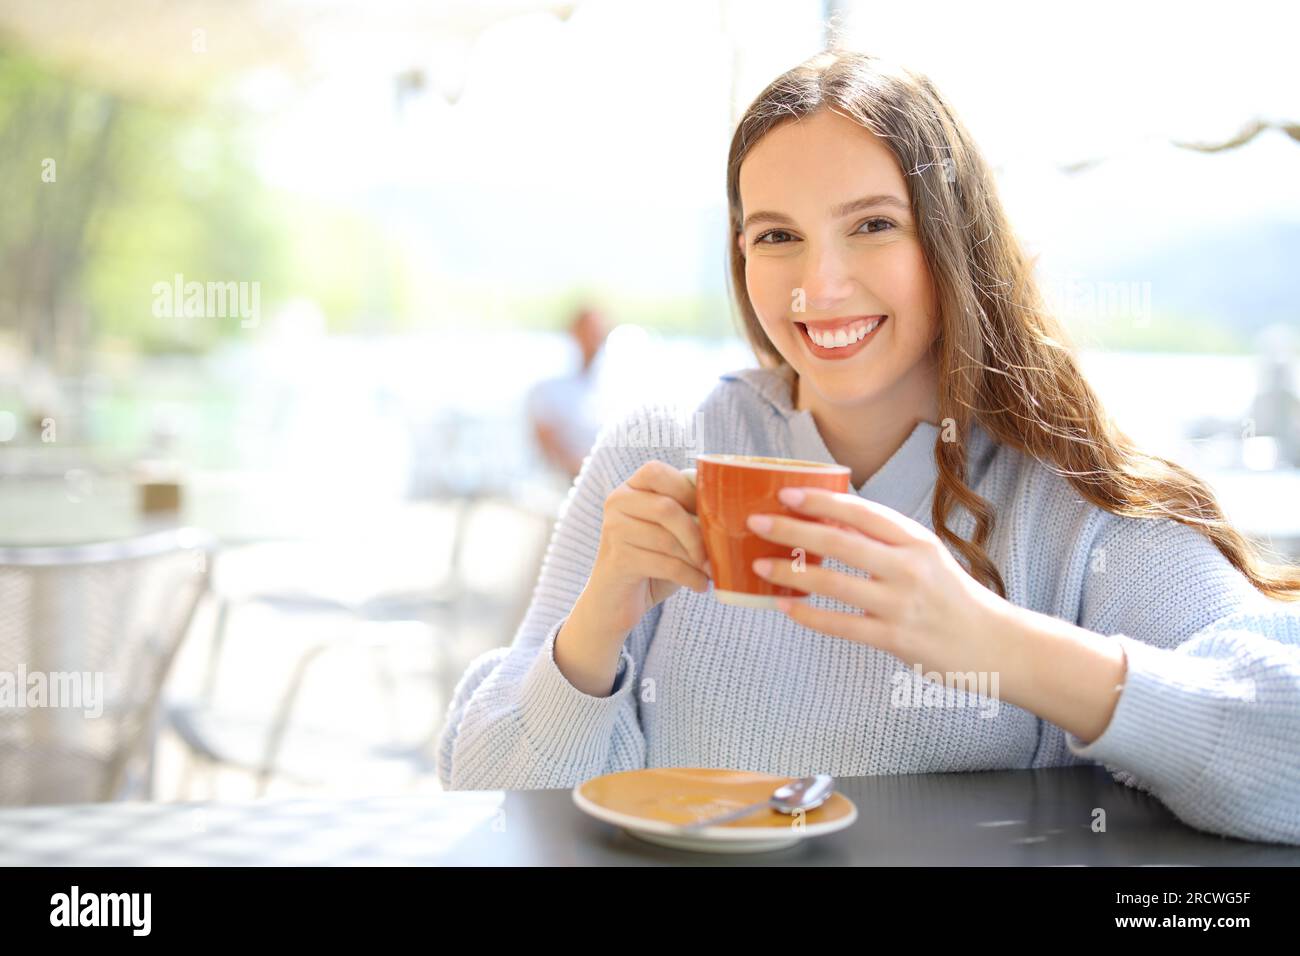 Cliente soddisfatto del ristorante che tiene una tazza di caffè guardando la macchina fotografica in terrazza Foto Stock